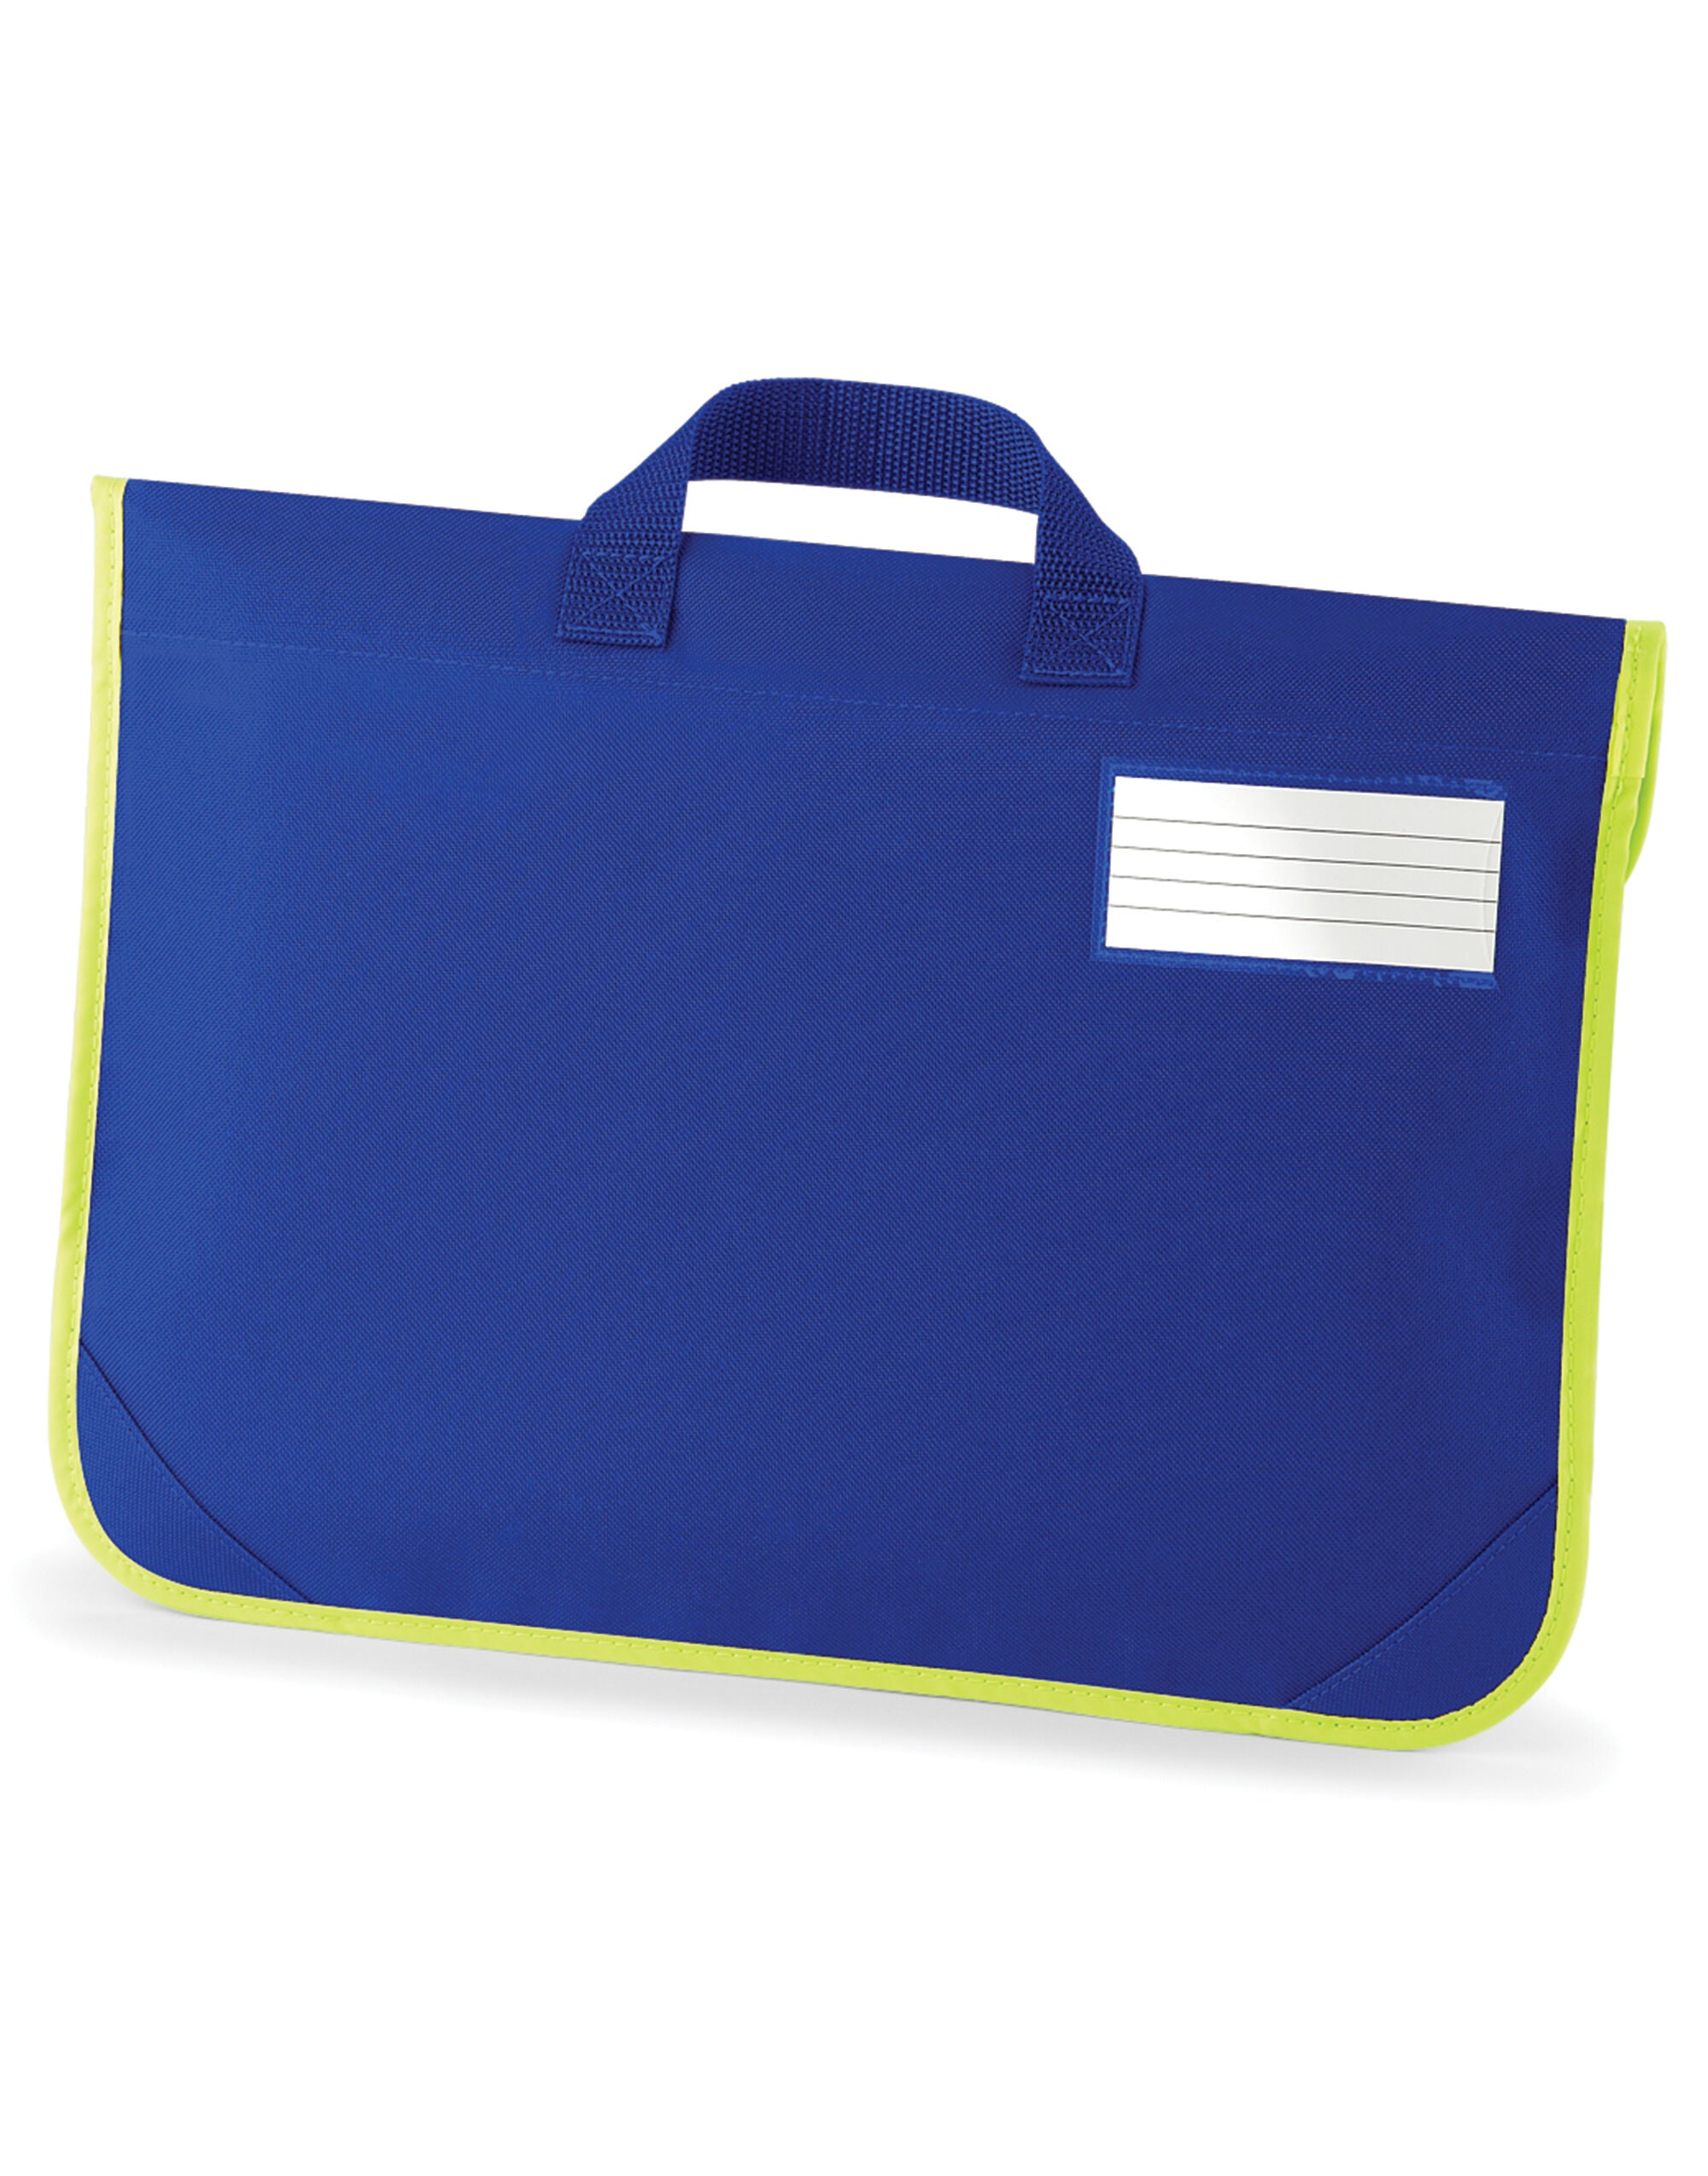 Quadra Enhanced-Viz Book Bag Enhanced visibility reflective panel (QD452)